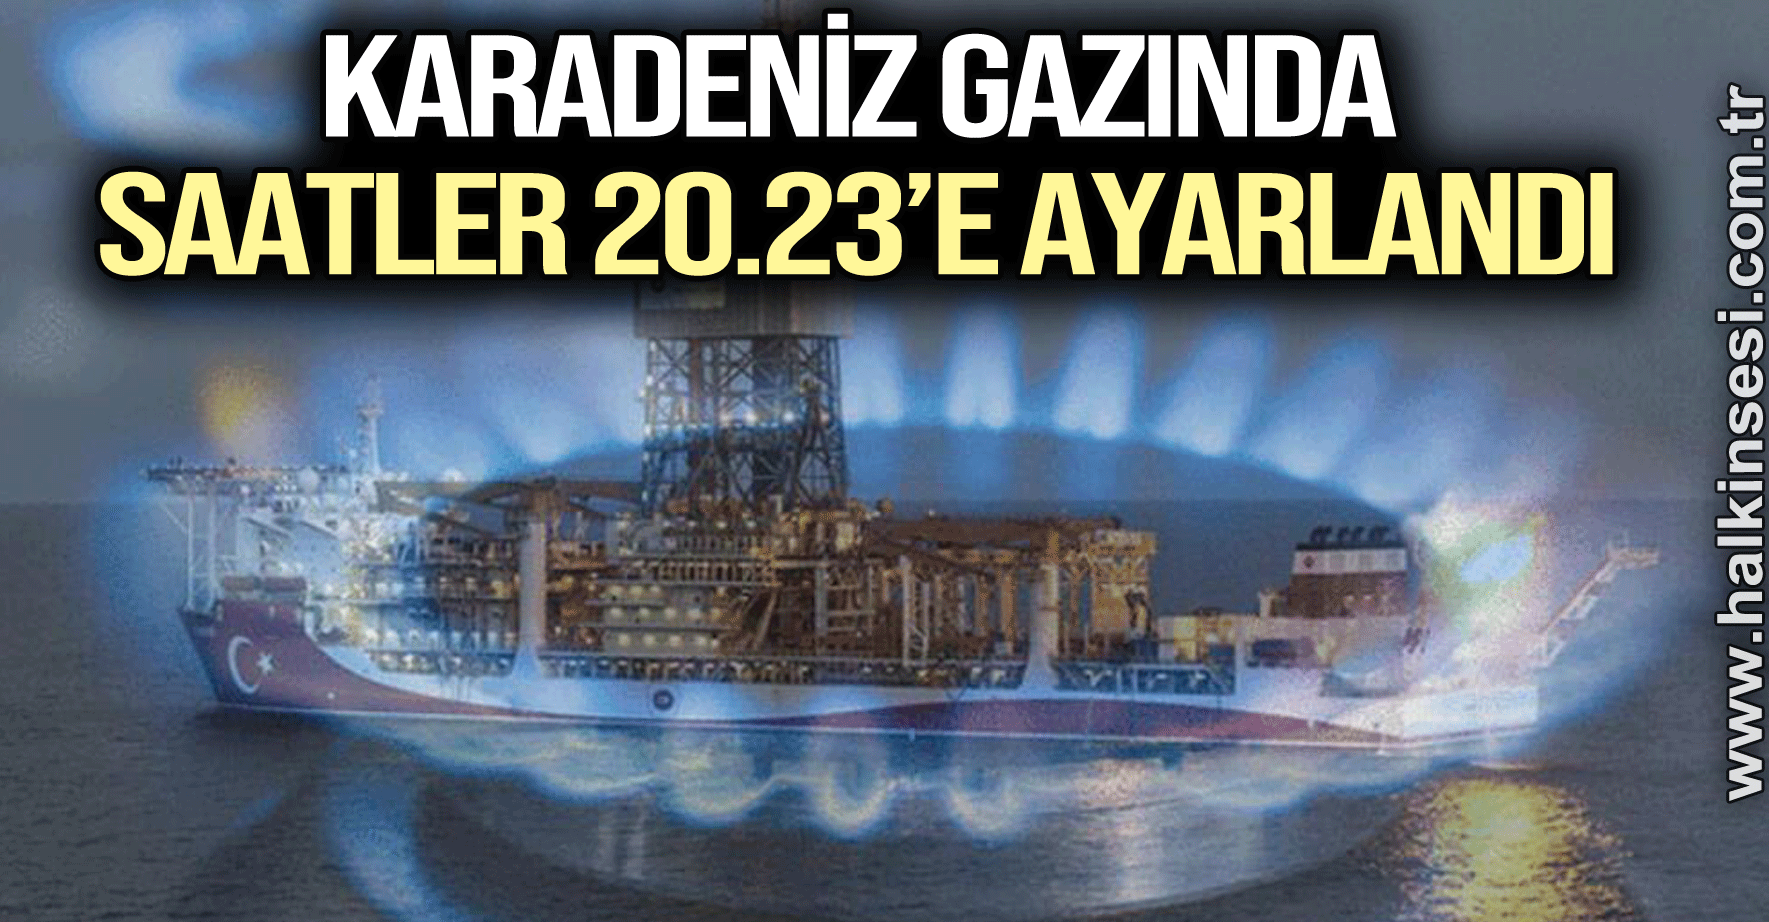 Karadeniz gazında saatler 20.23’e ayarlandı